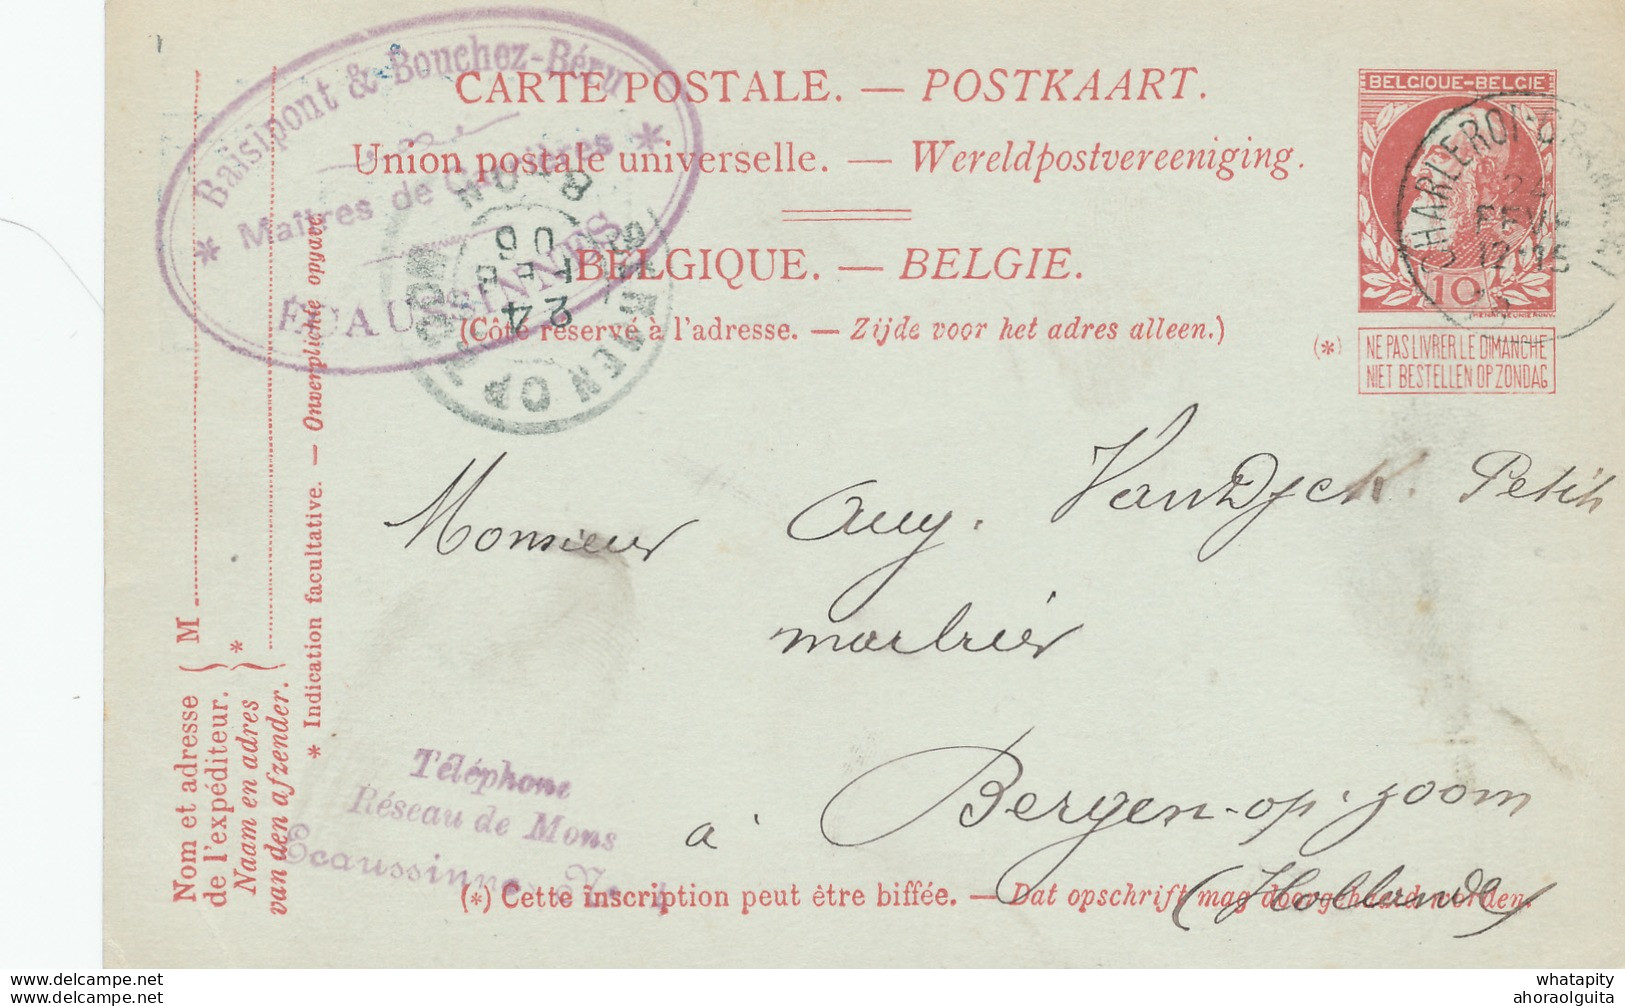 DDW704 - Entier Postal Grosse Barbe AMBULANT CHARLEROI-GRAMMONT 1906 - Cachet Maitres De Forges à ECAUSSINNES - Ambulante Stempels